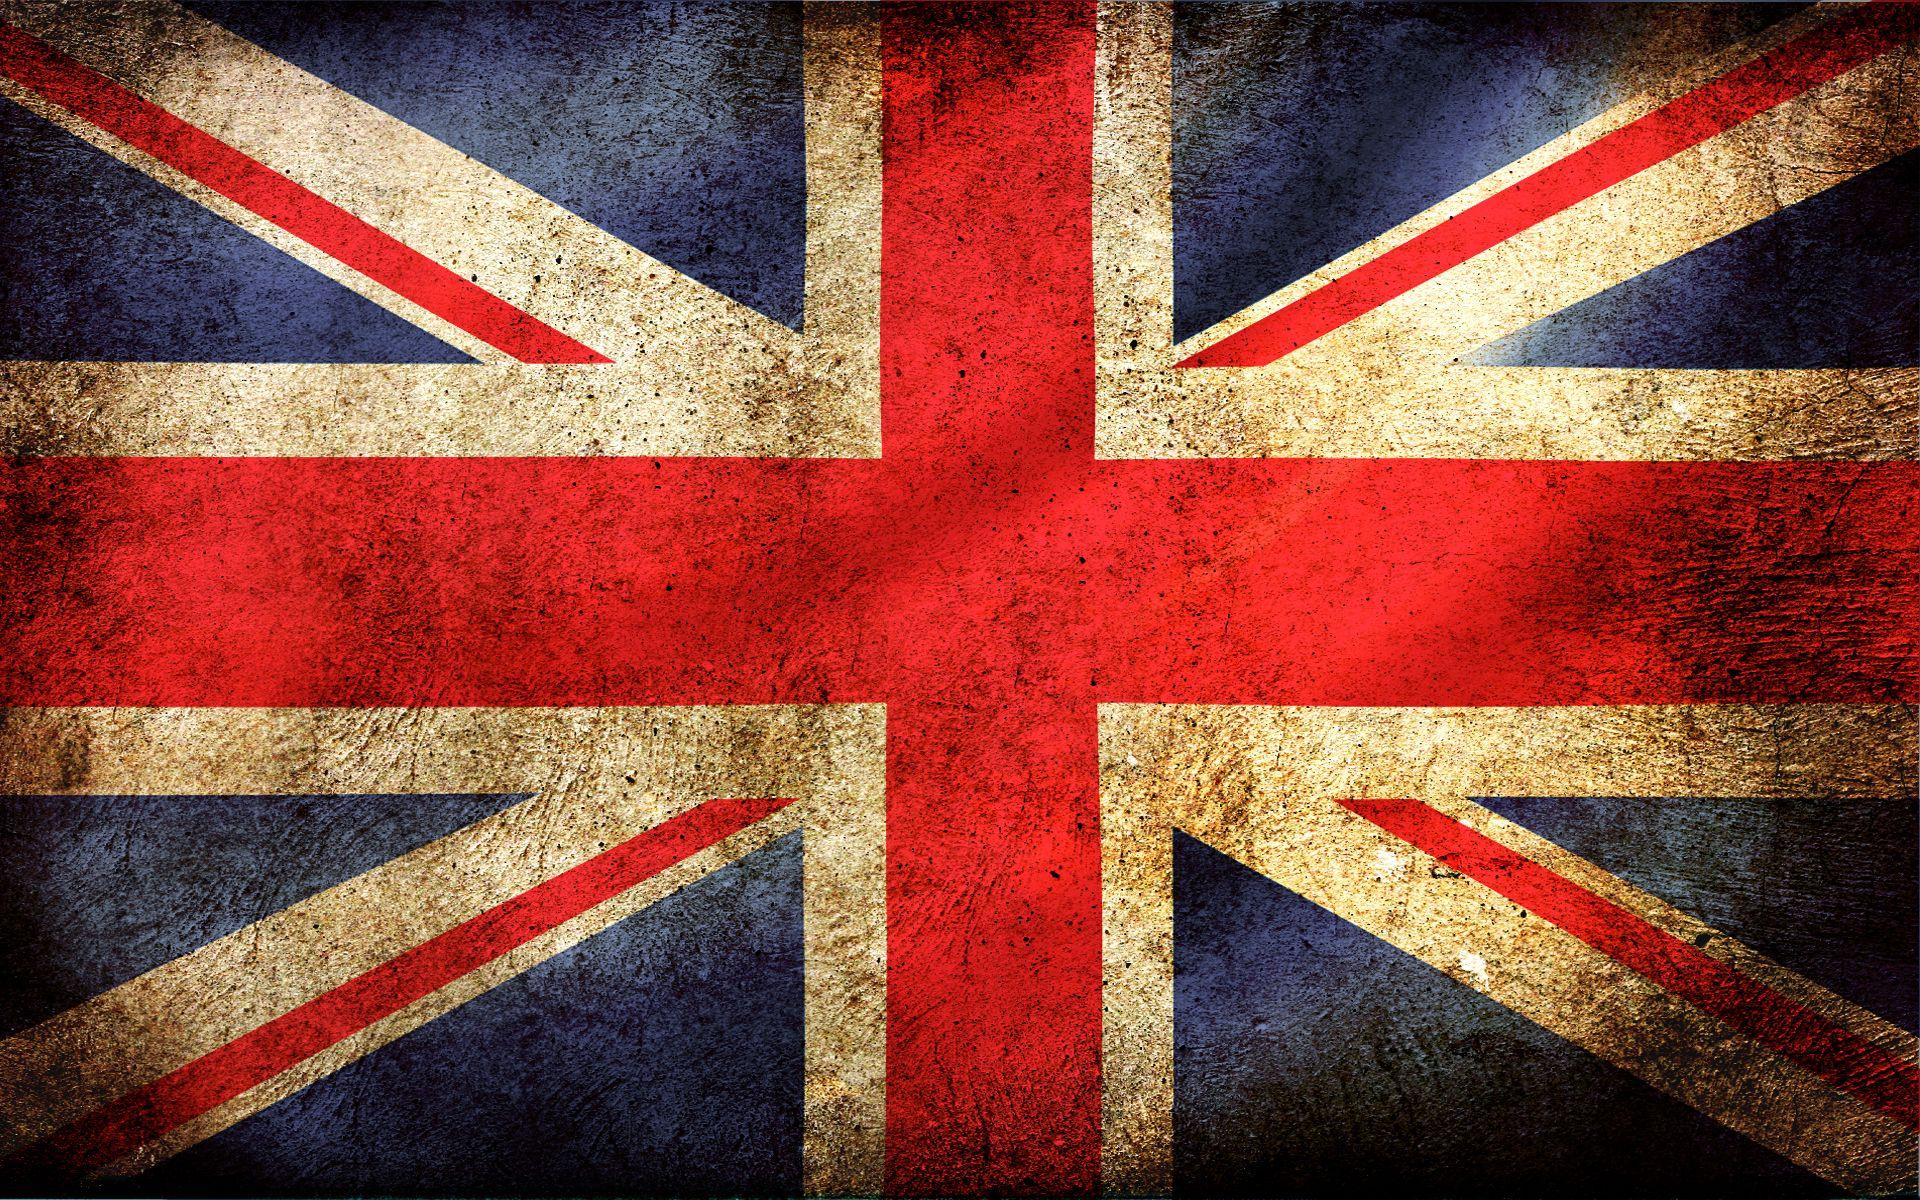 Hình nền Union Jack đẹp nhất: Hình nền Union Jack đẹp làm nền cực chất cho laptop hoặc điện thoại của bạn. Với thương hiệu anh hùng của Vương quốc Anh, Union Jack sẽ mang đến một phong cách tinh tế cho thiết bị của bạn. Tình yêu và tự hào với Vương quốc Anh sẽ được thể hiện thông qua hình nền Union Jack đẹp nhất.